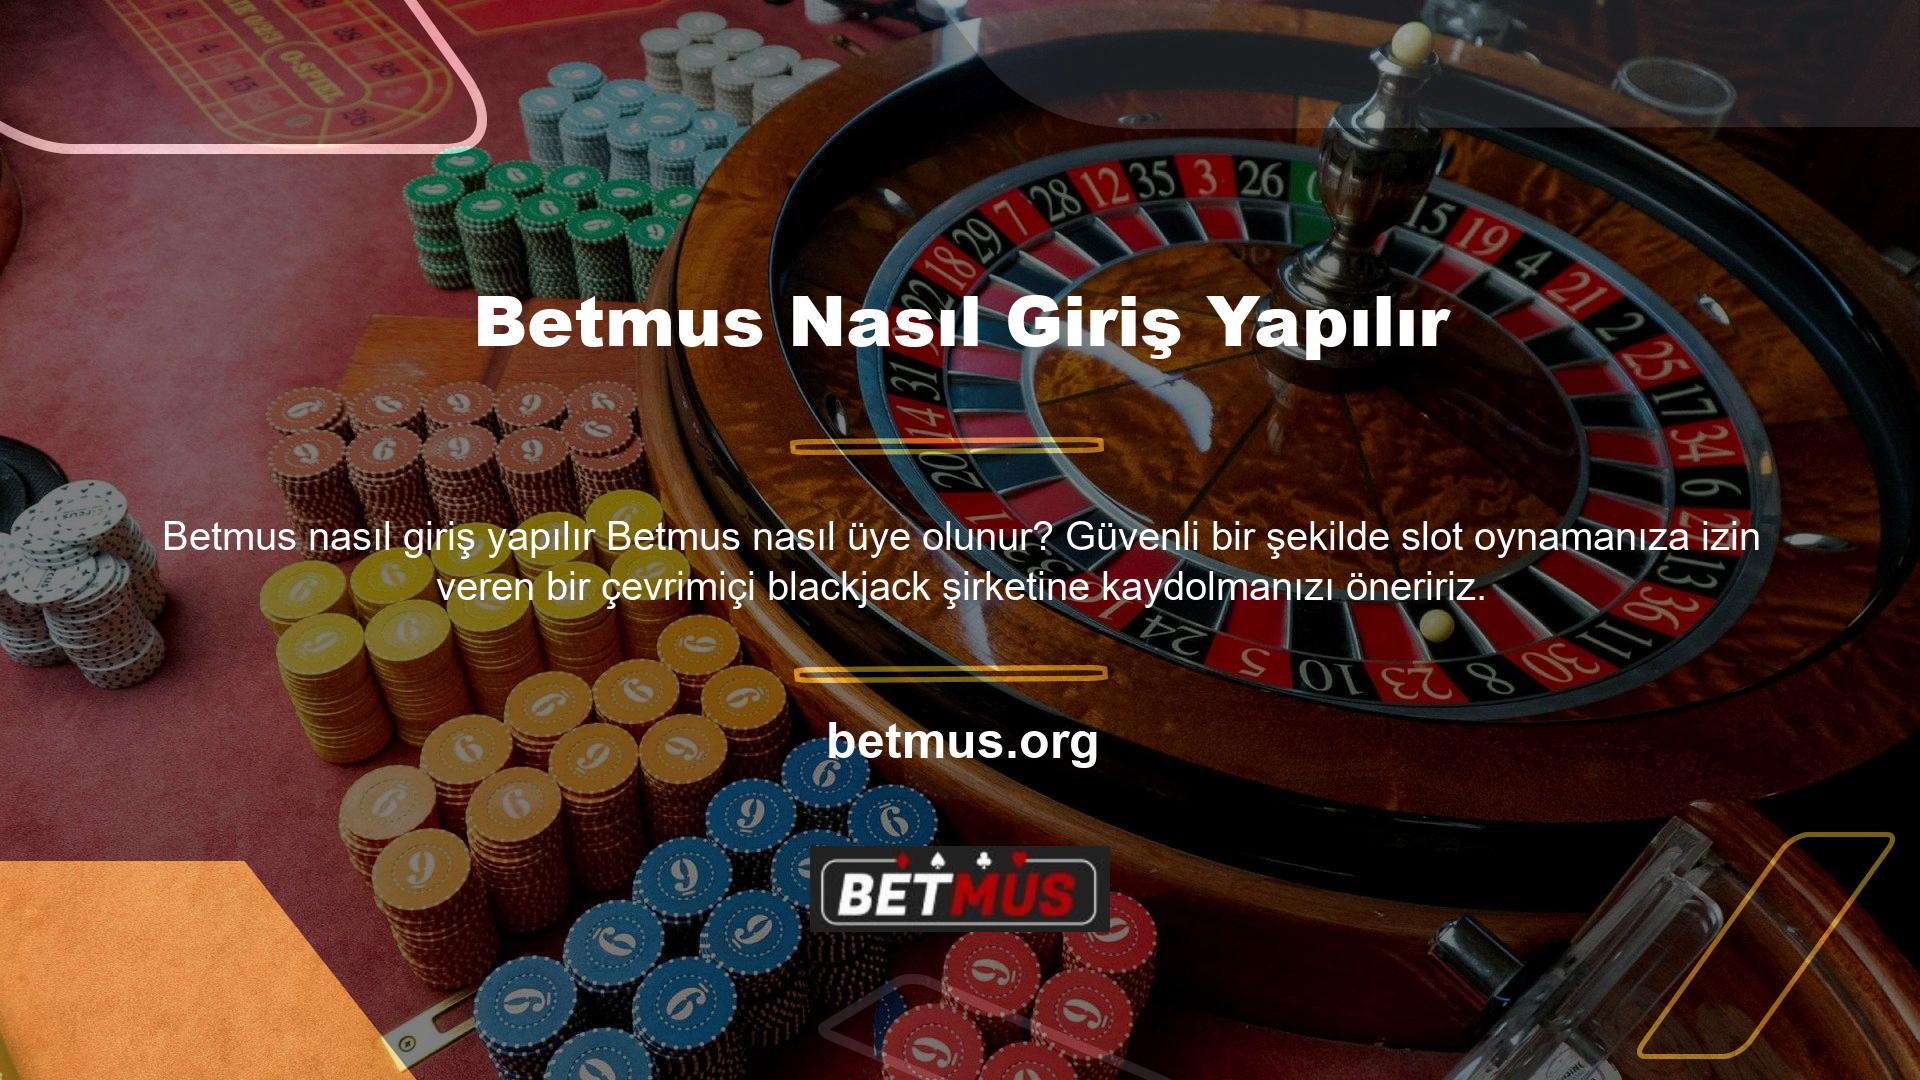 Betmus blackjack oynayarak kazanç sağlayabilirsiniz